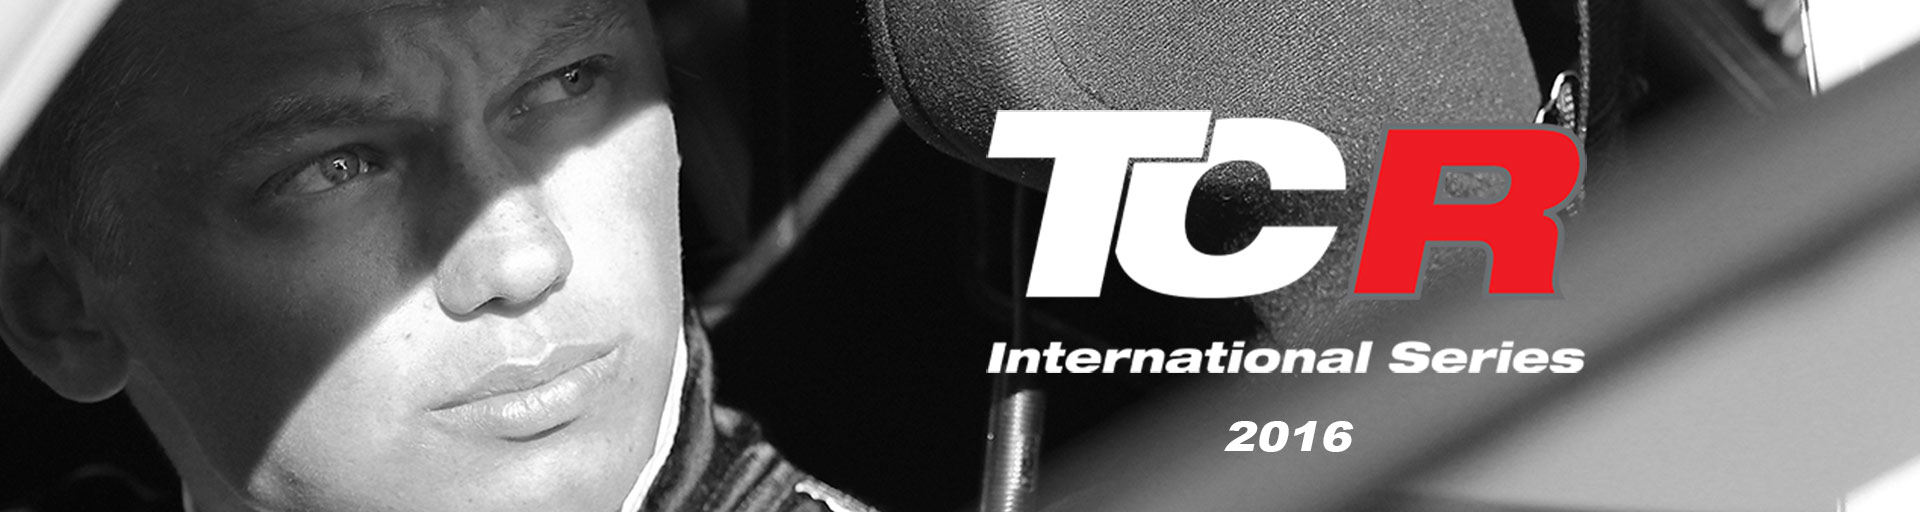 Maťo Homola ide do sveta - bude štartovať v TCR International Series!